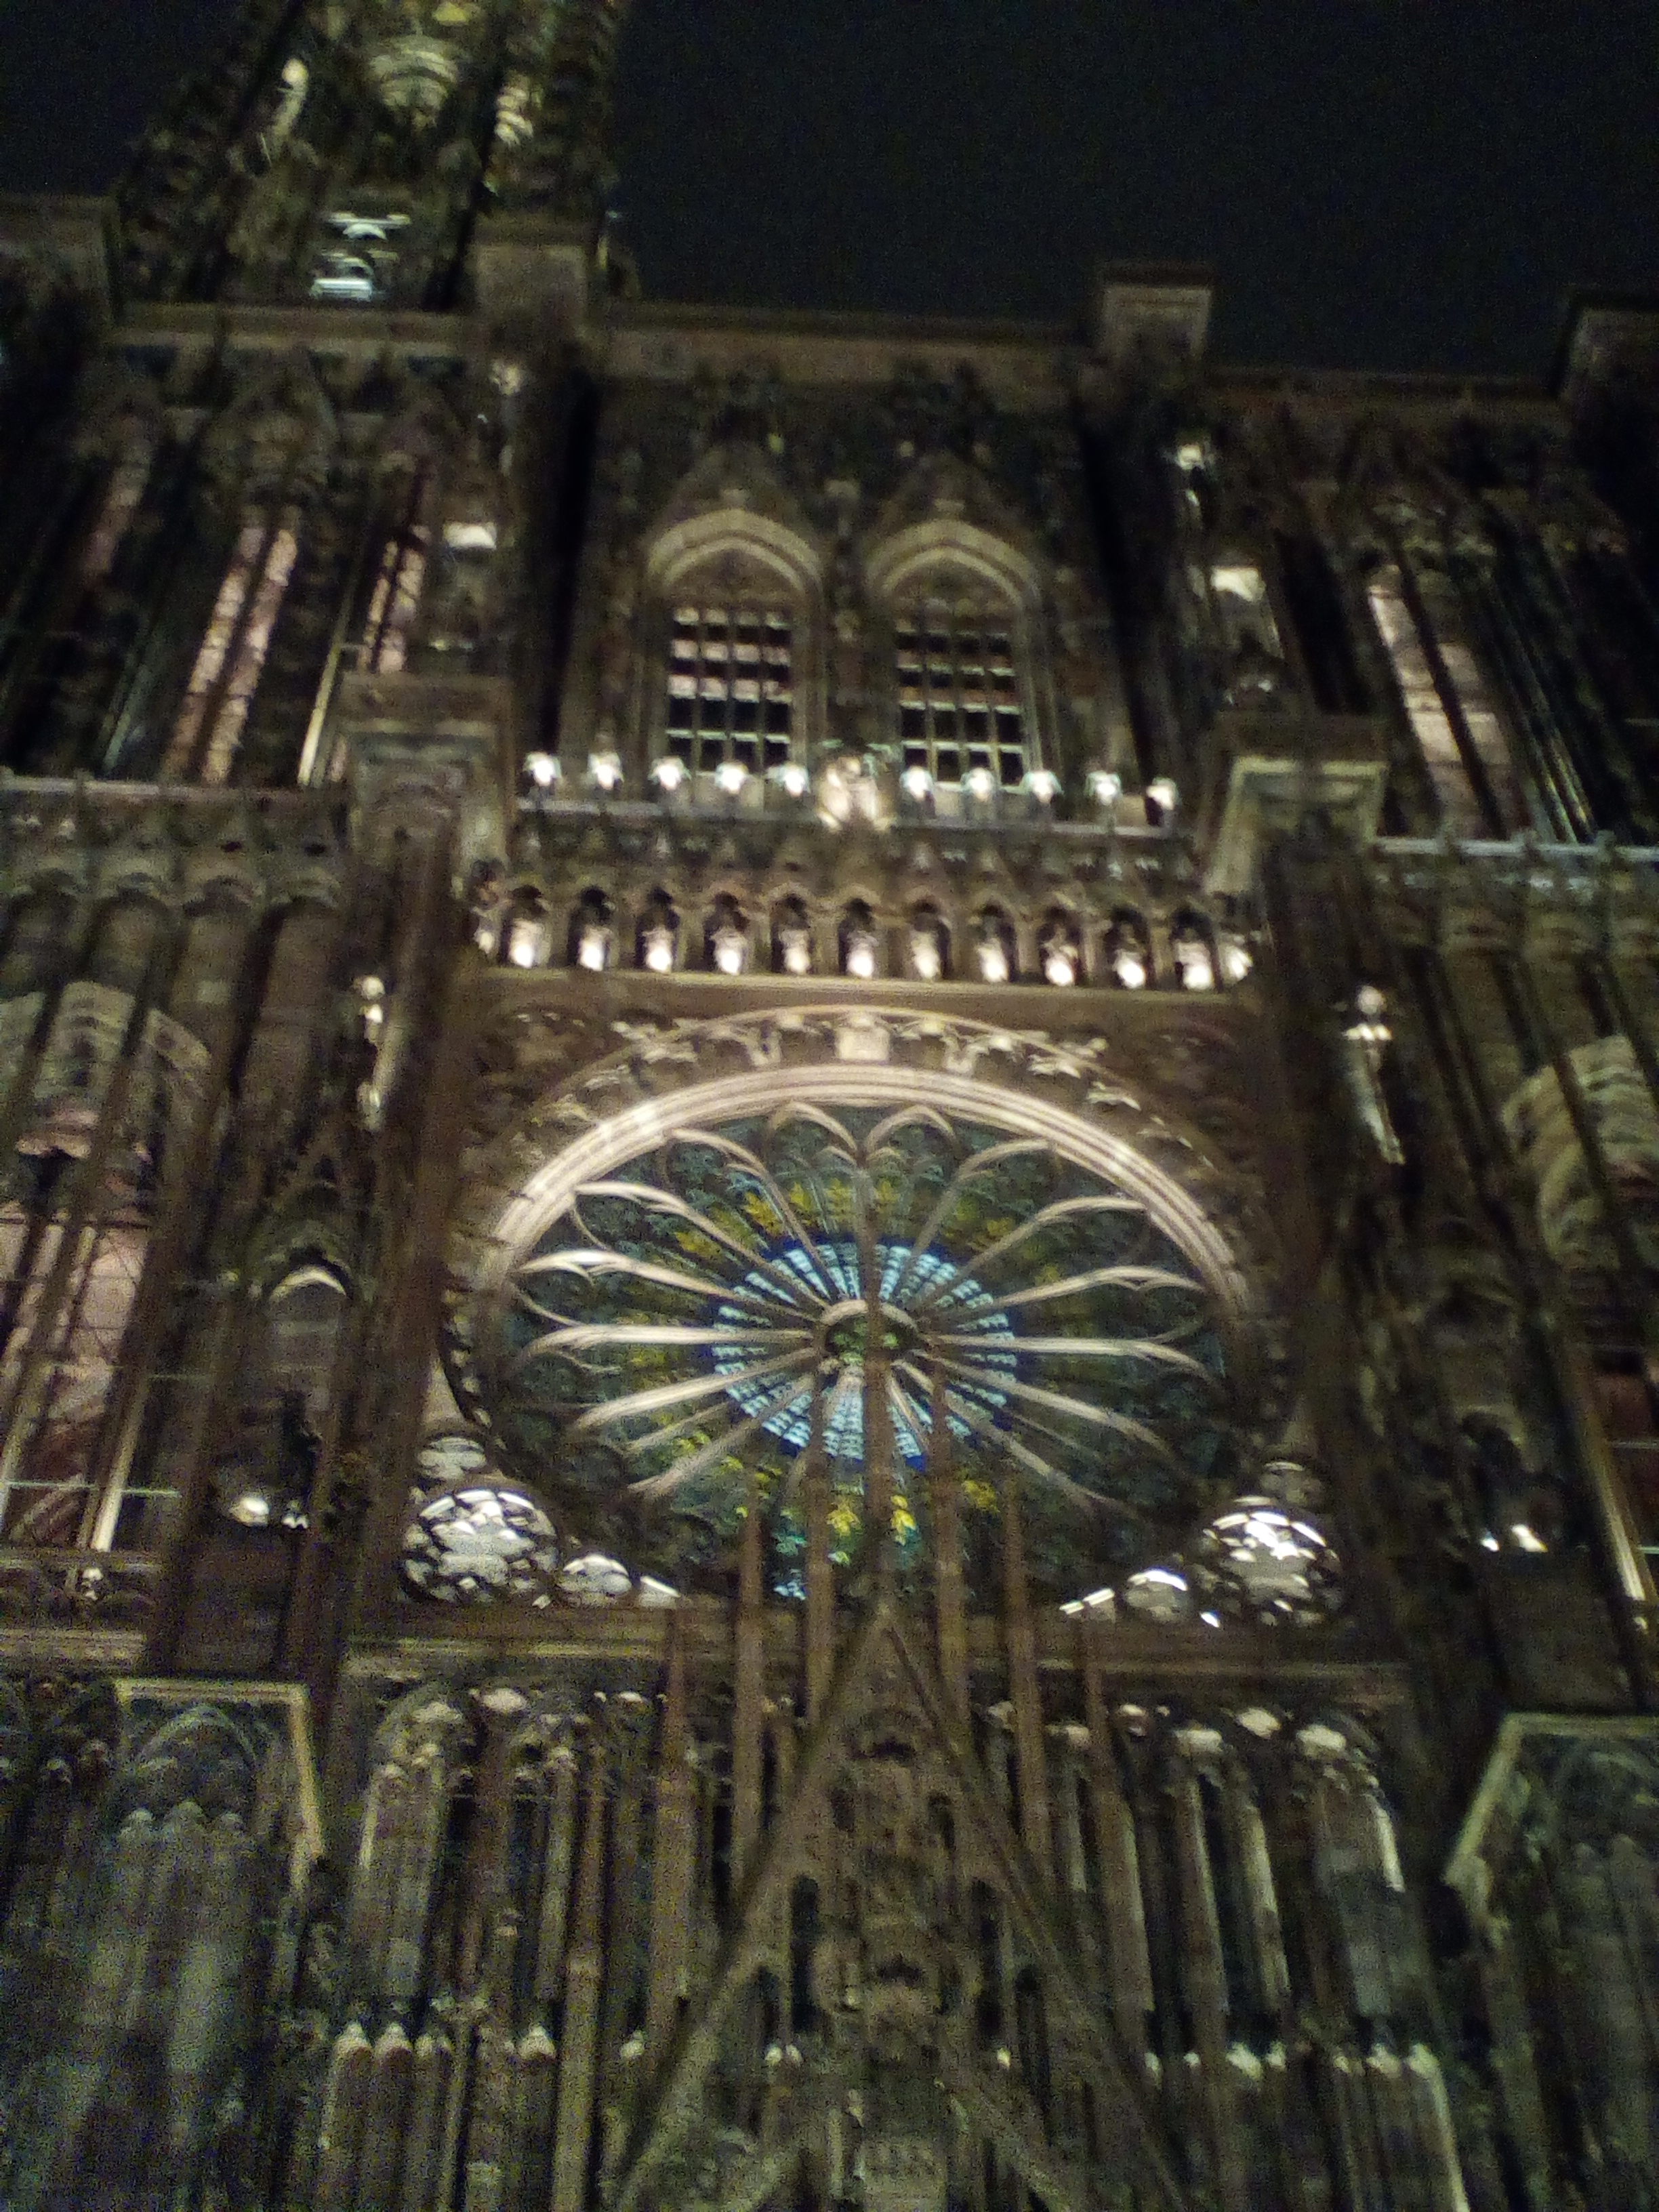 Vue partielle de la cathédrale strasbourgeoise. Au centre de la photographie on voit la fameuse rosette multicolore. Photo prise de nuit.